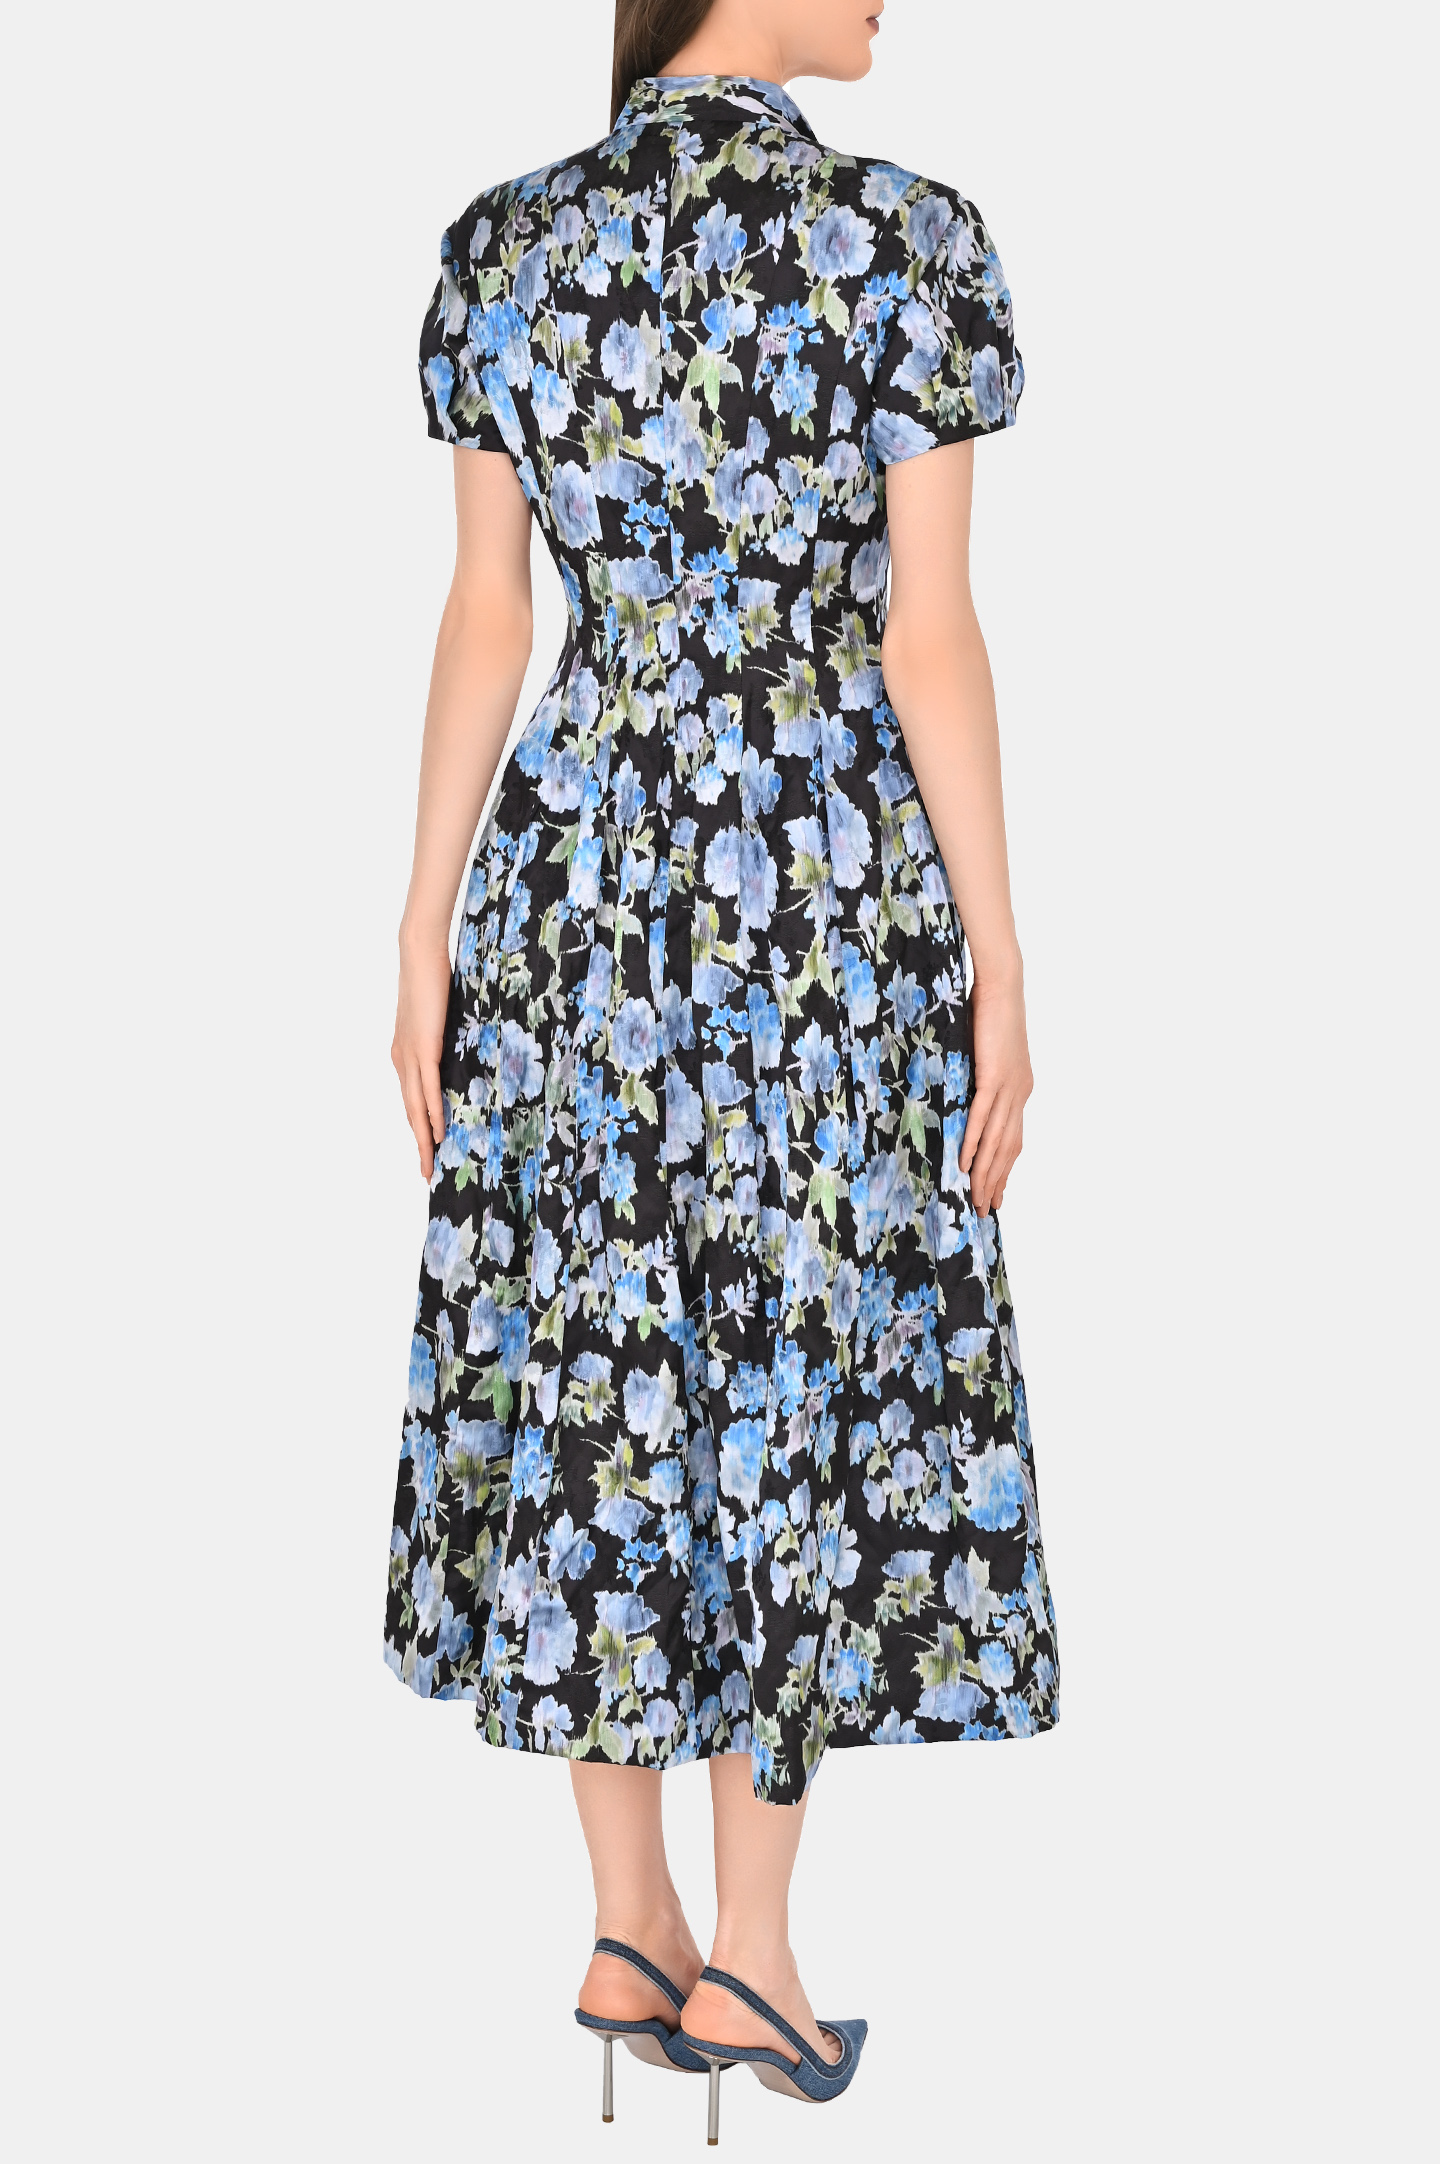 Платье с цветочным принтом PHILOSOPHY DI LORENZO SERAFINI A0461 739, цвет: Черный, Женский